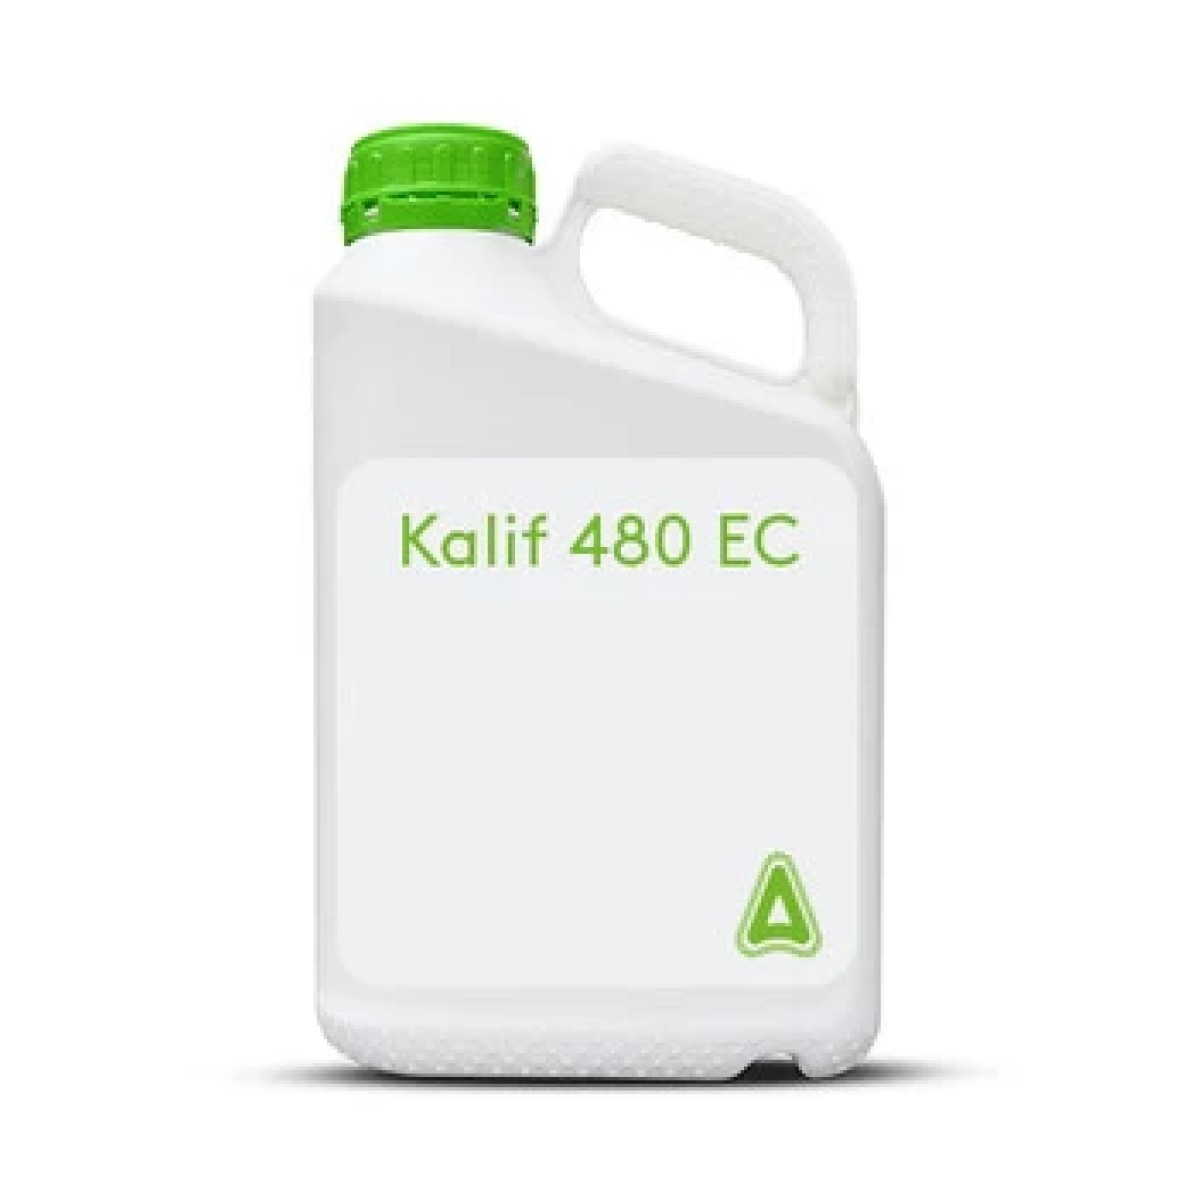 Kalif 480 EC